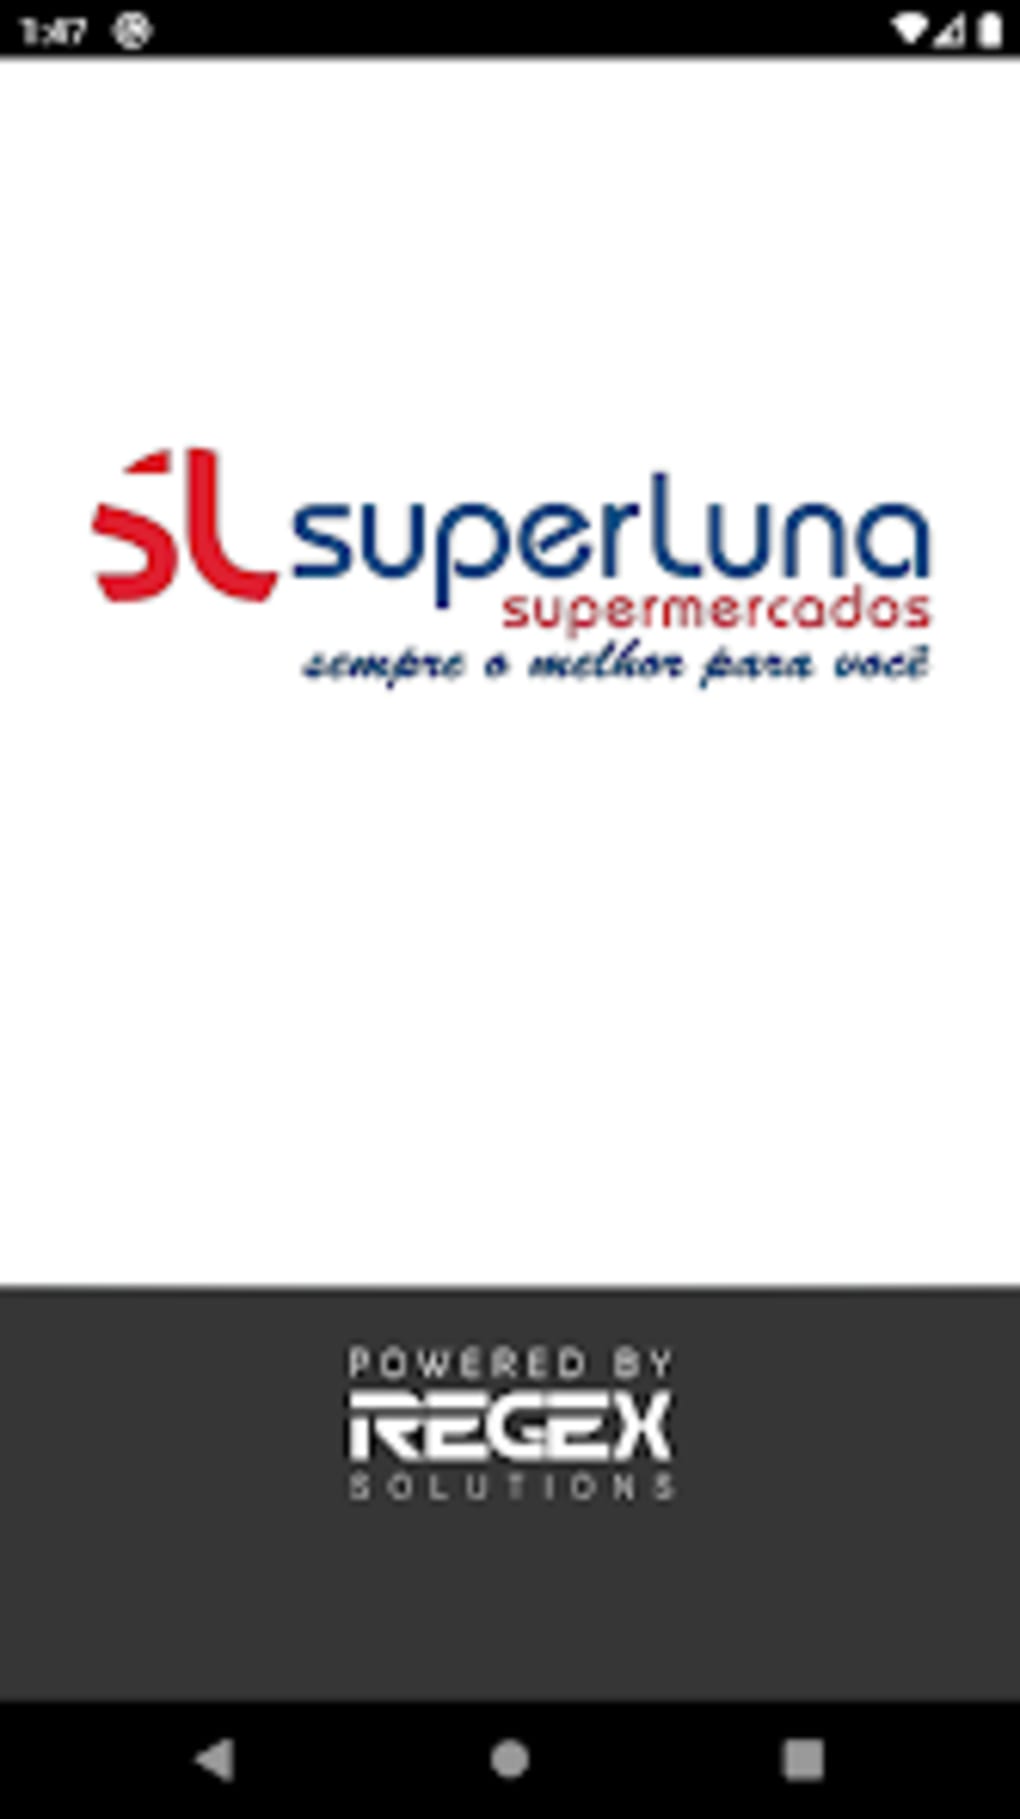 SuperLuna Supermercados